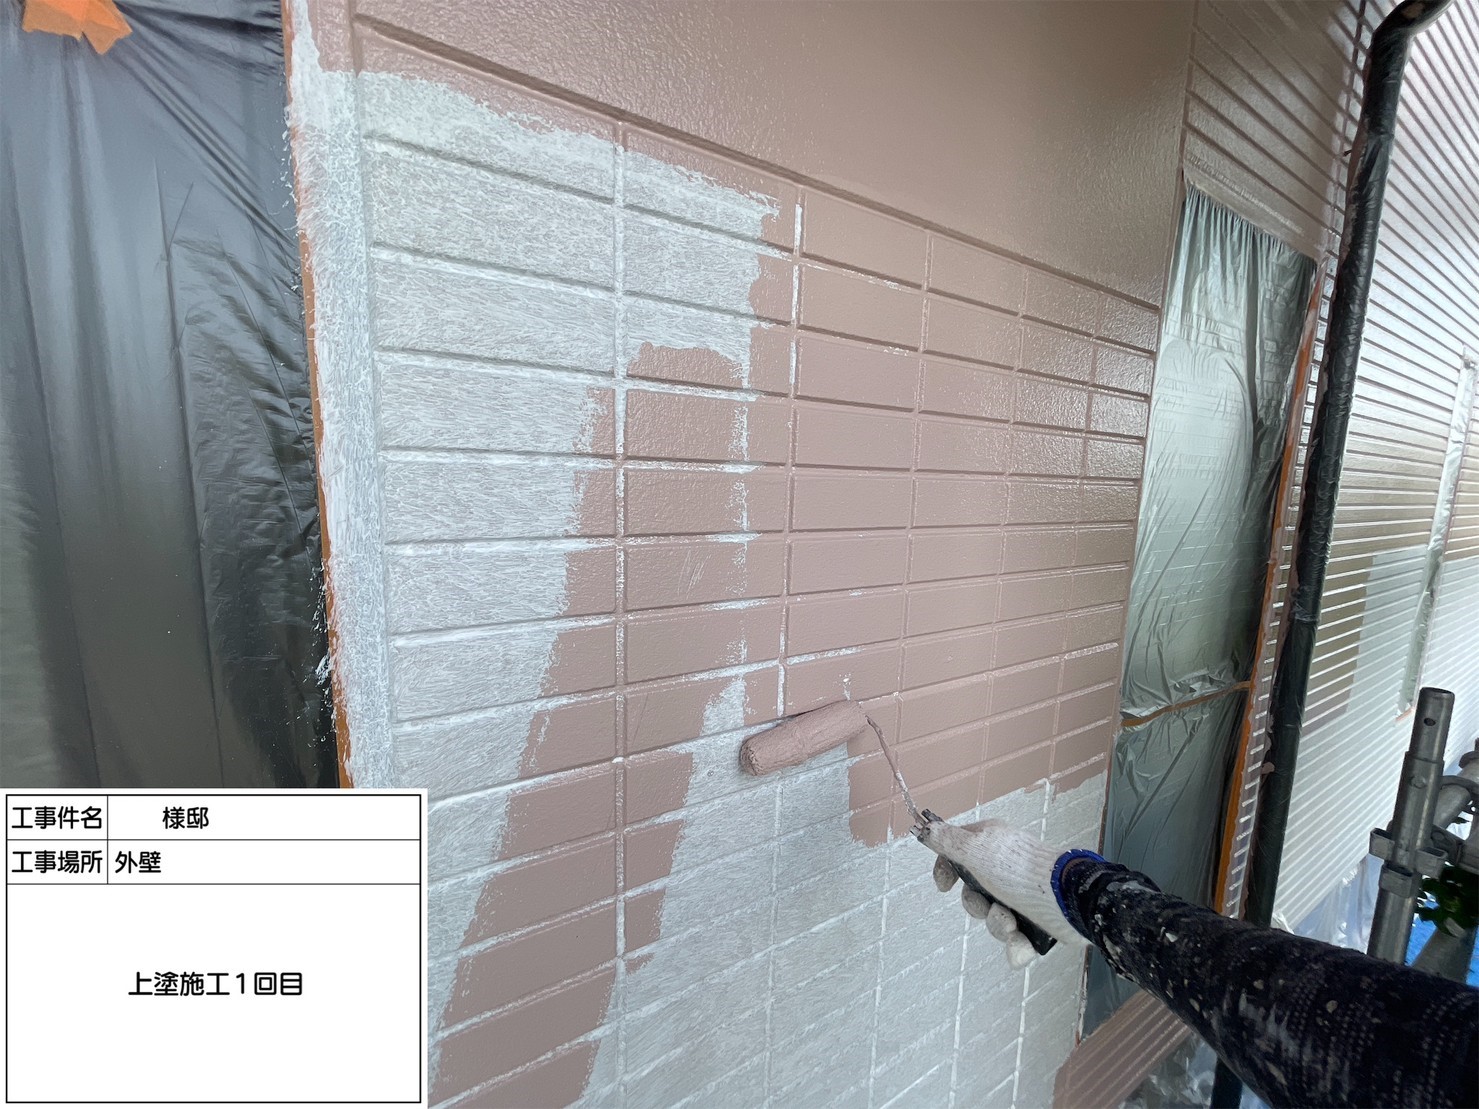 福岡県三潴郡大木町のN様邸で高品質のフッ素塗料を使用して外壁塗装工事を行っています。5/23着工です。【ホームページより】